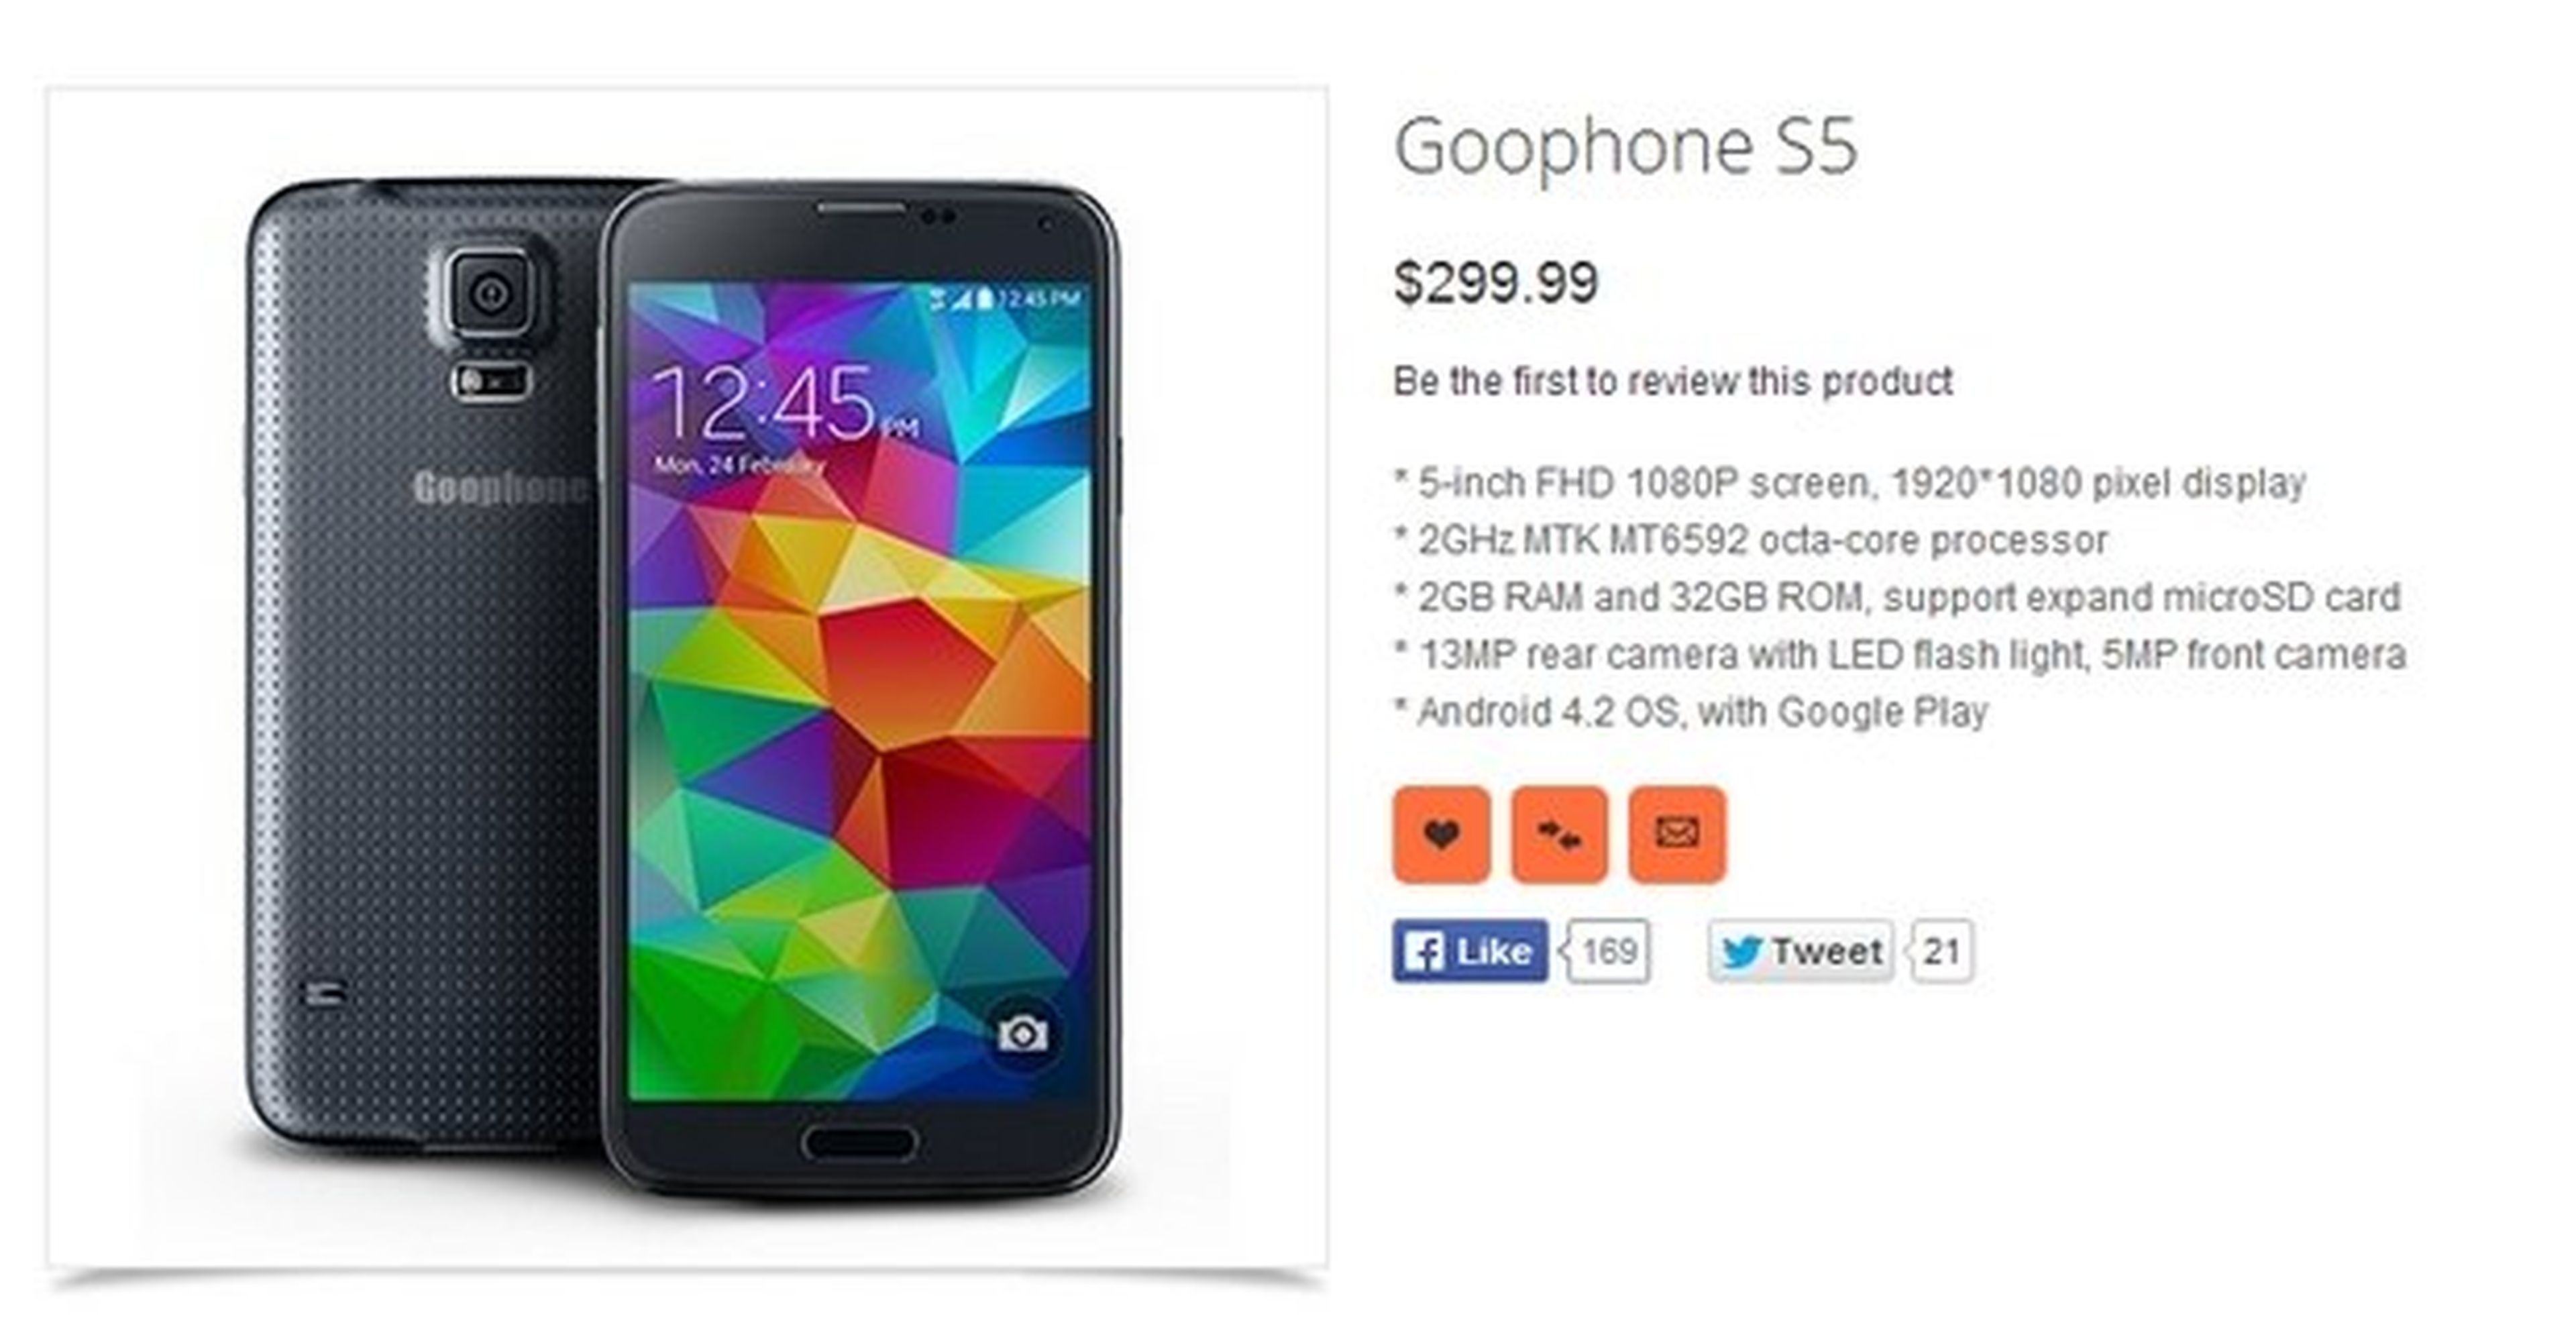 Goophone S5, clon chino barato del Samsung Galaxy S5